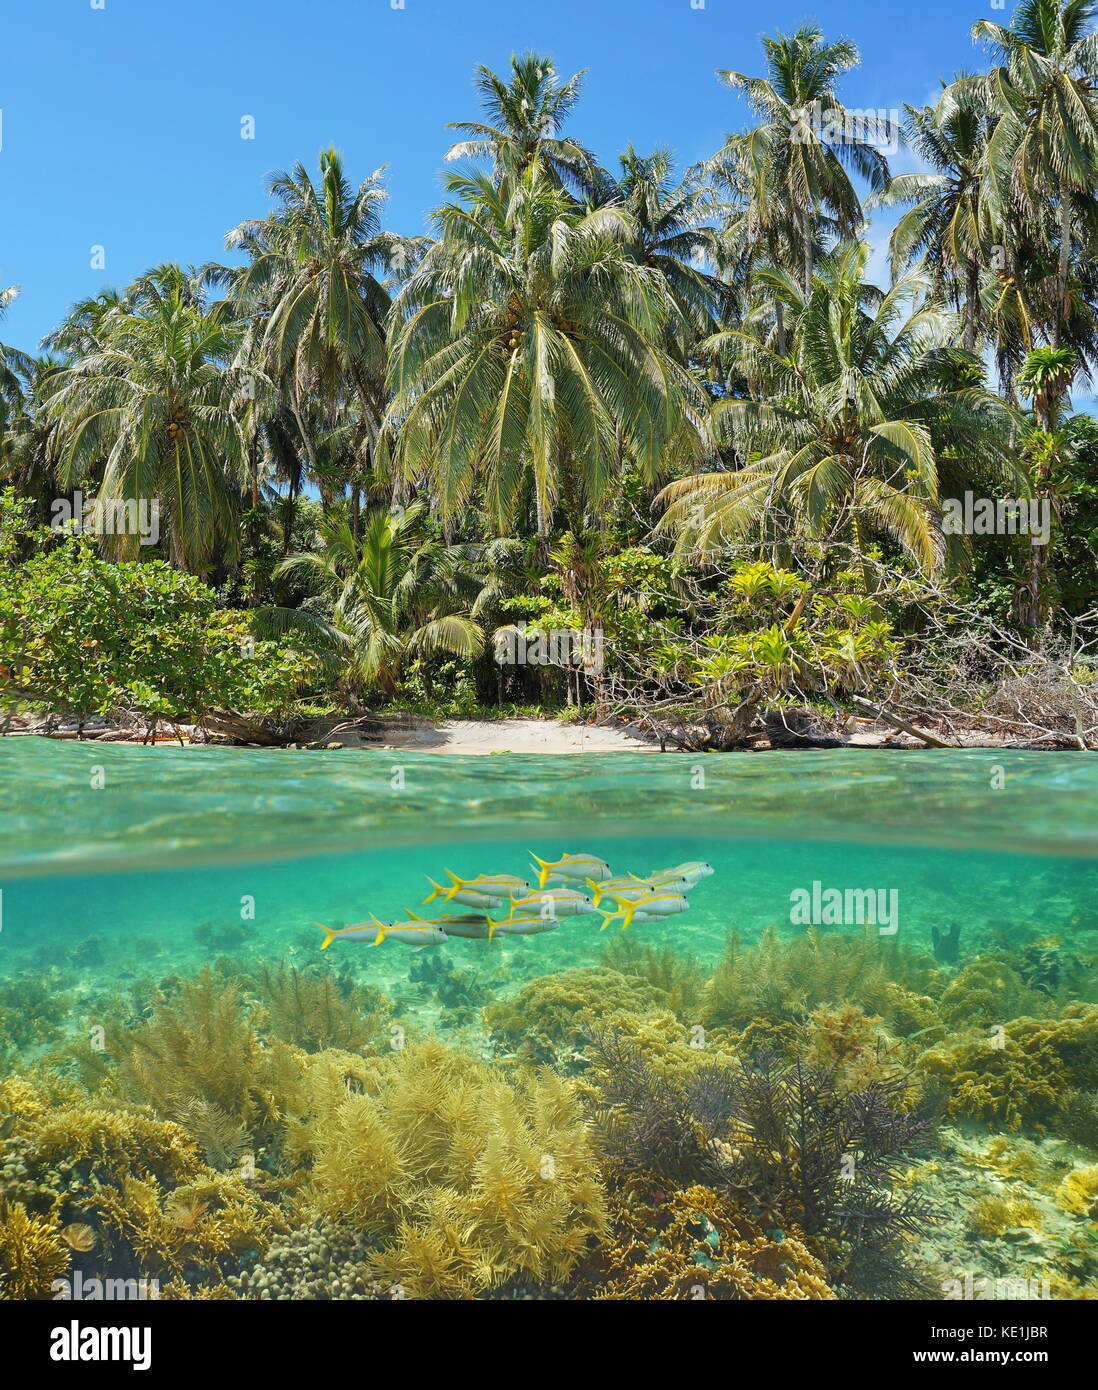 Al di sopra e al di sotto della superficie dell'acqua sulla spiaggia selvaggia shore con coralli e pesci, subacqueo il mare dei Caraibi, panama, zapatilla isole Foto Stock